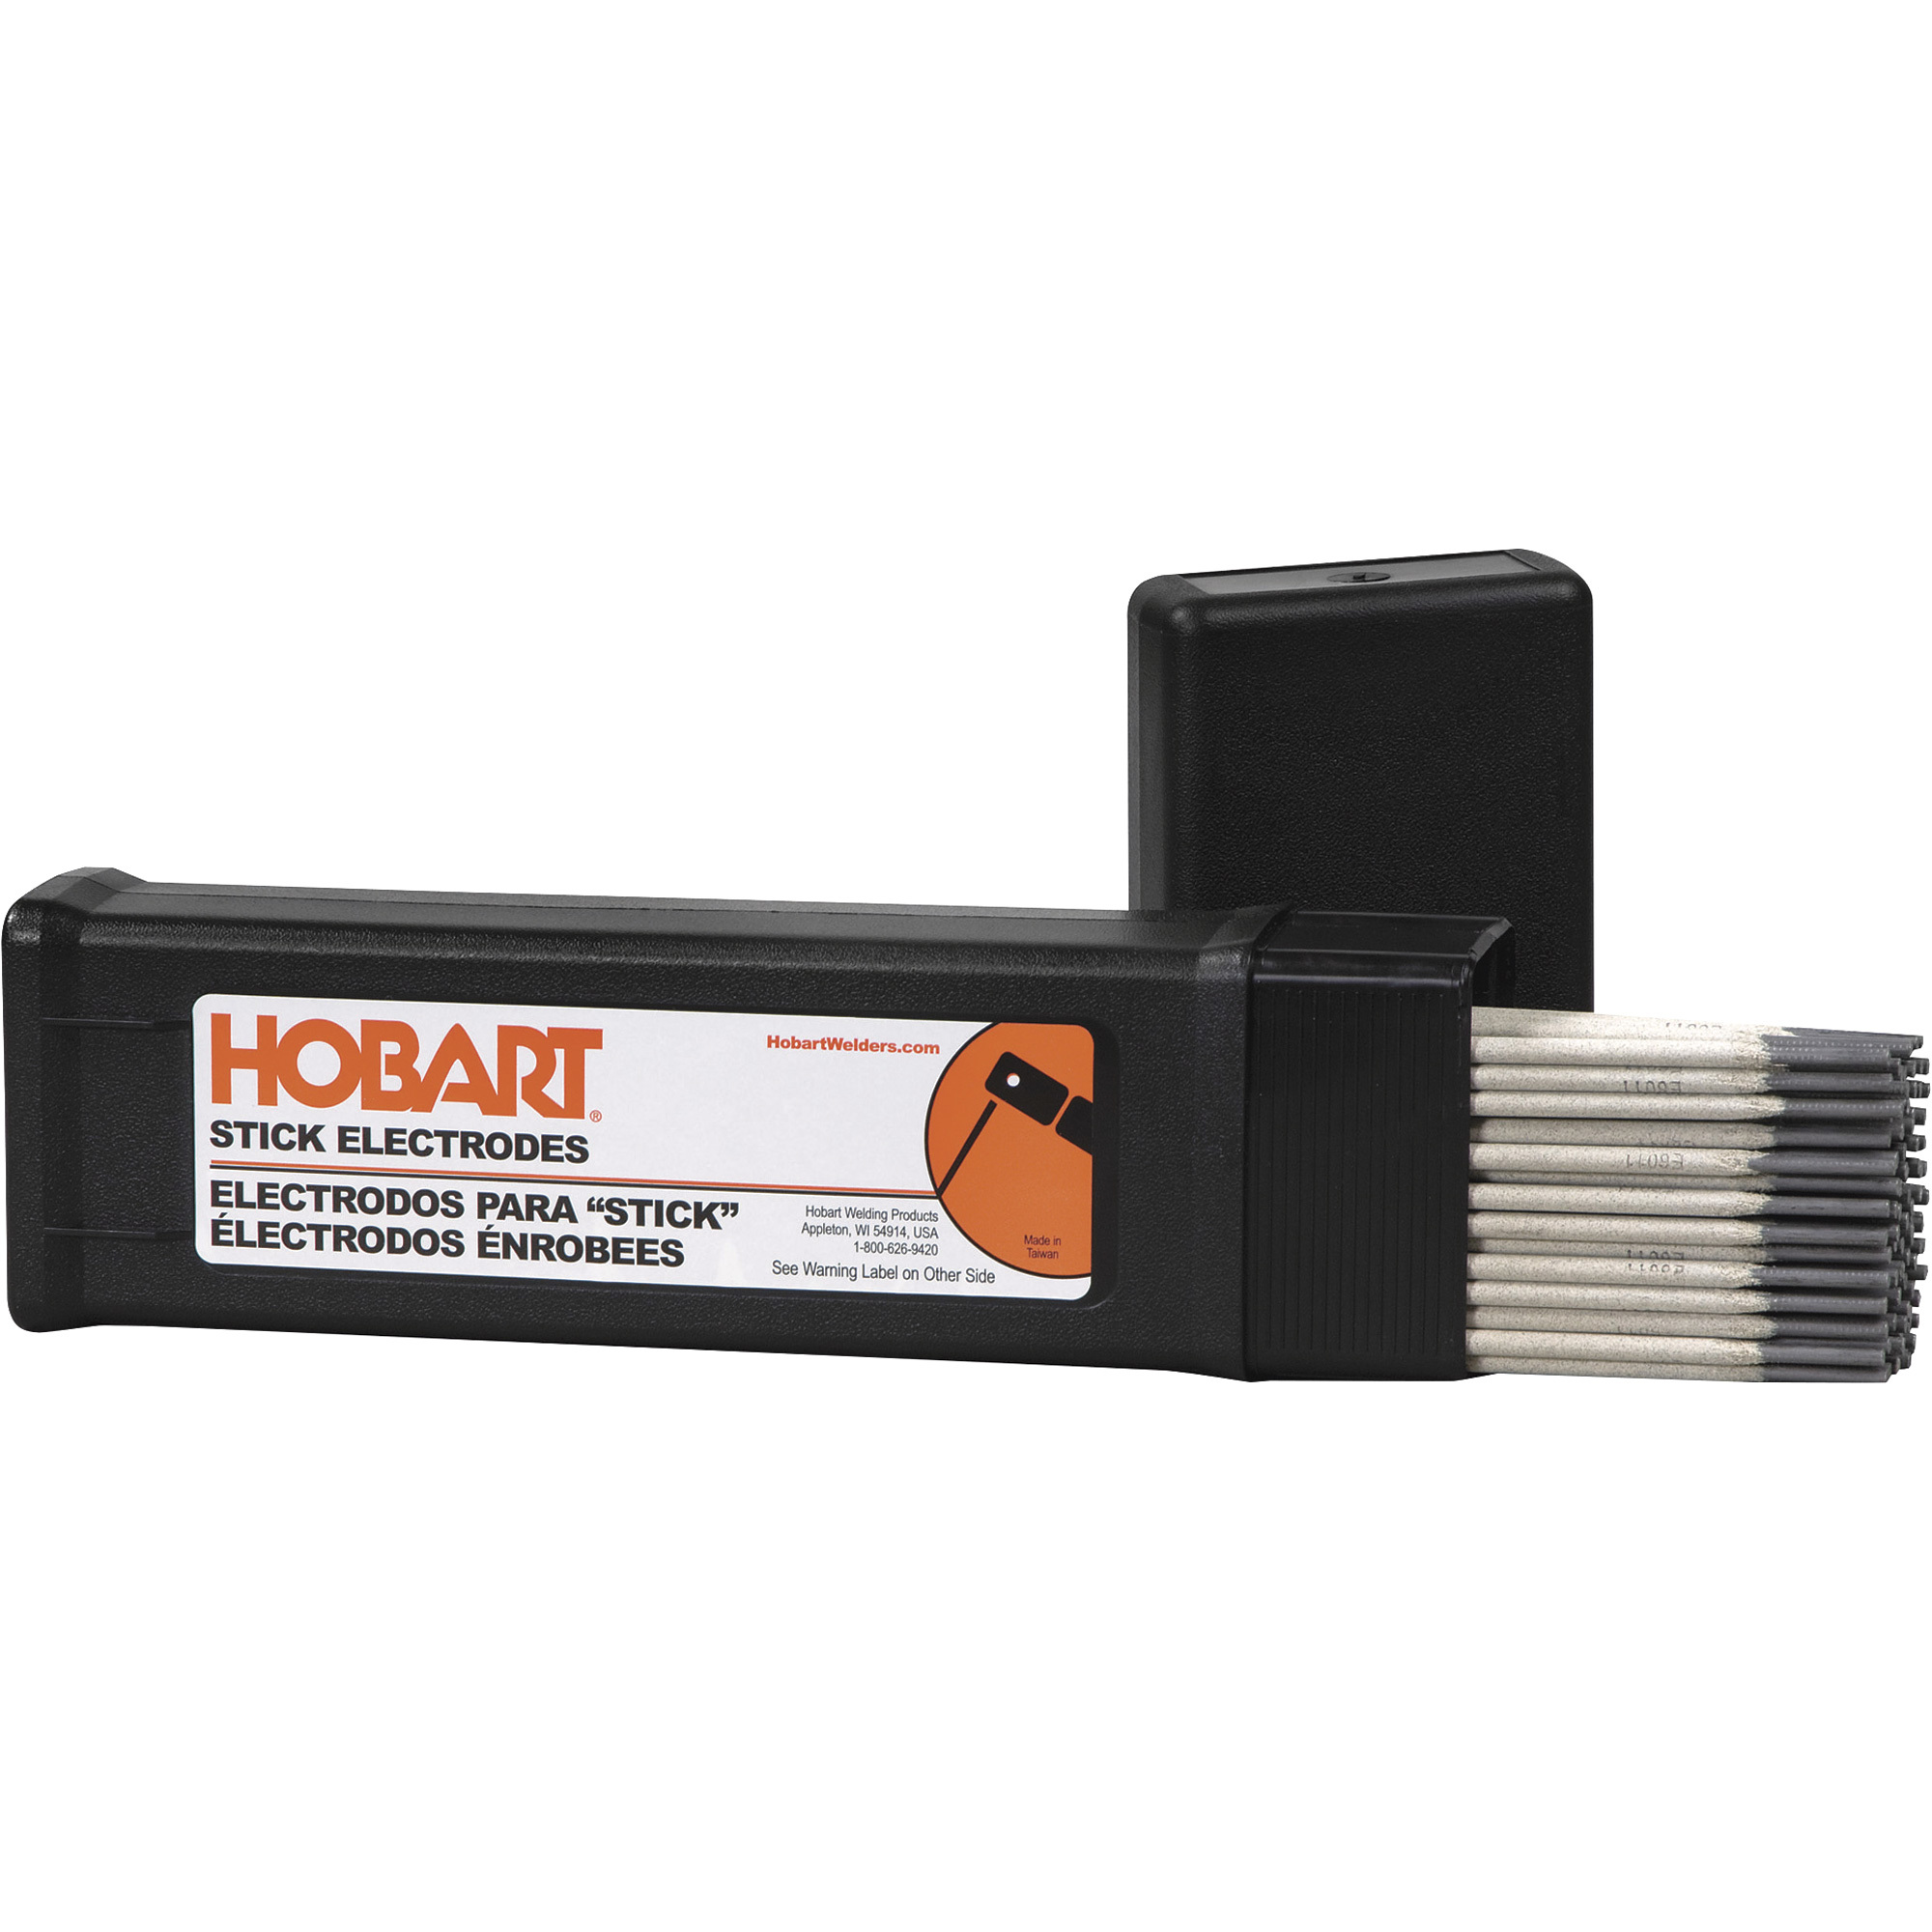 Hobart Filler Metals Stick Welding Electrodes â 6013, 3/32Inch x 12Inch L, 5-Lb. Container, Model 770466